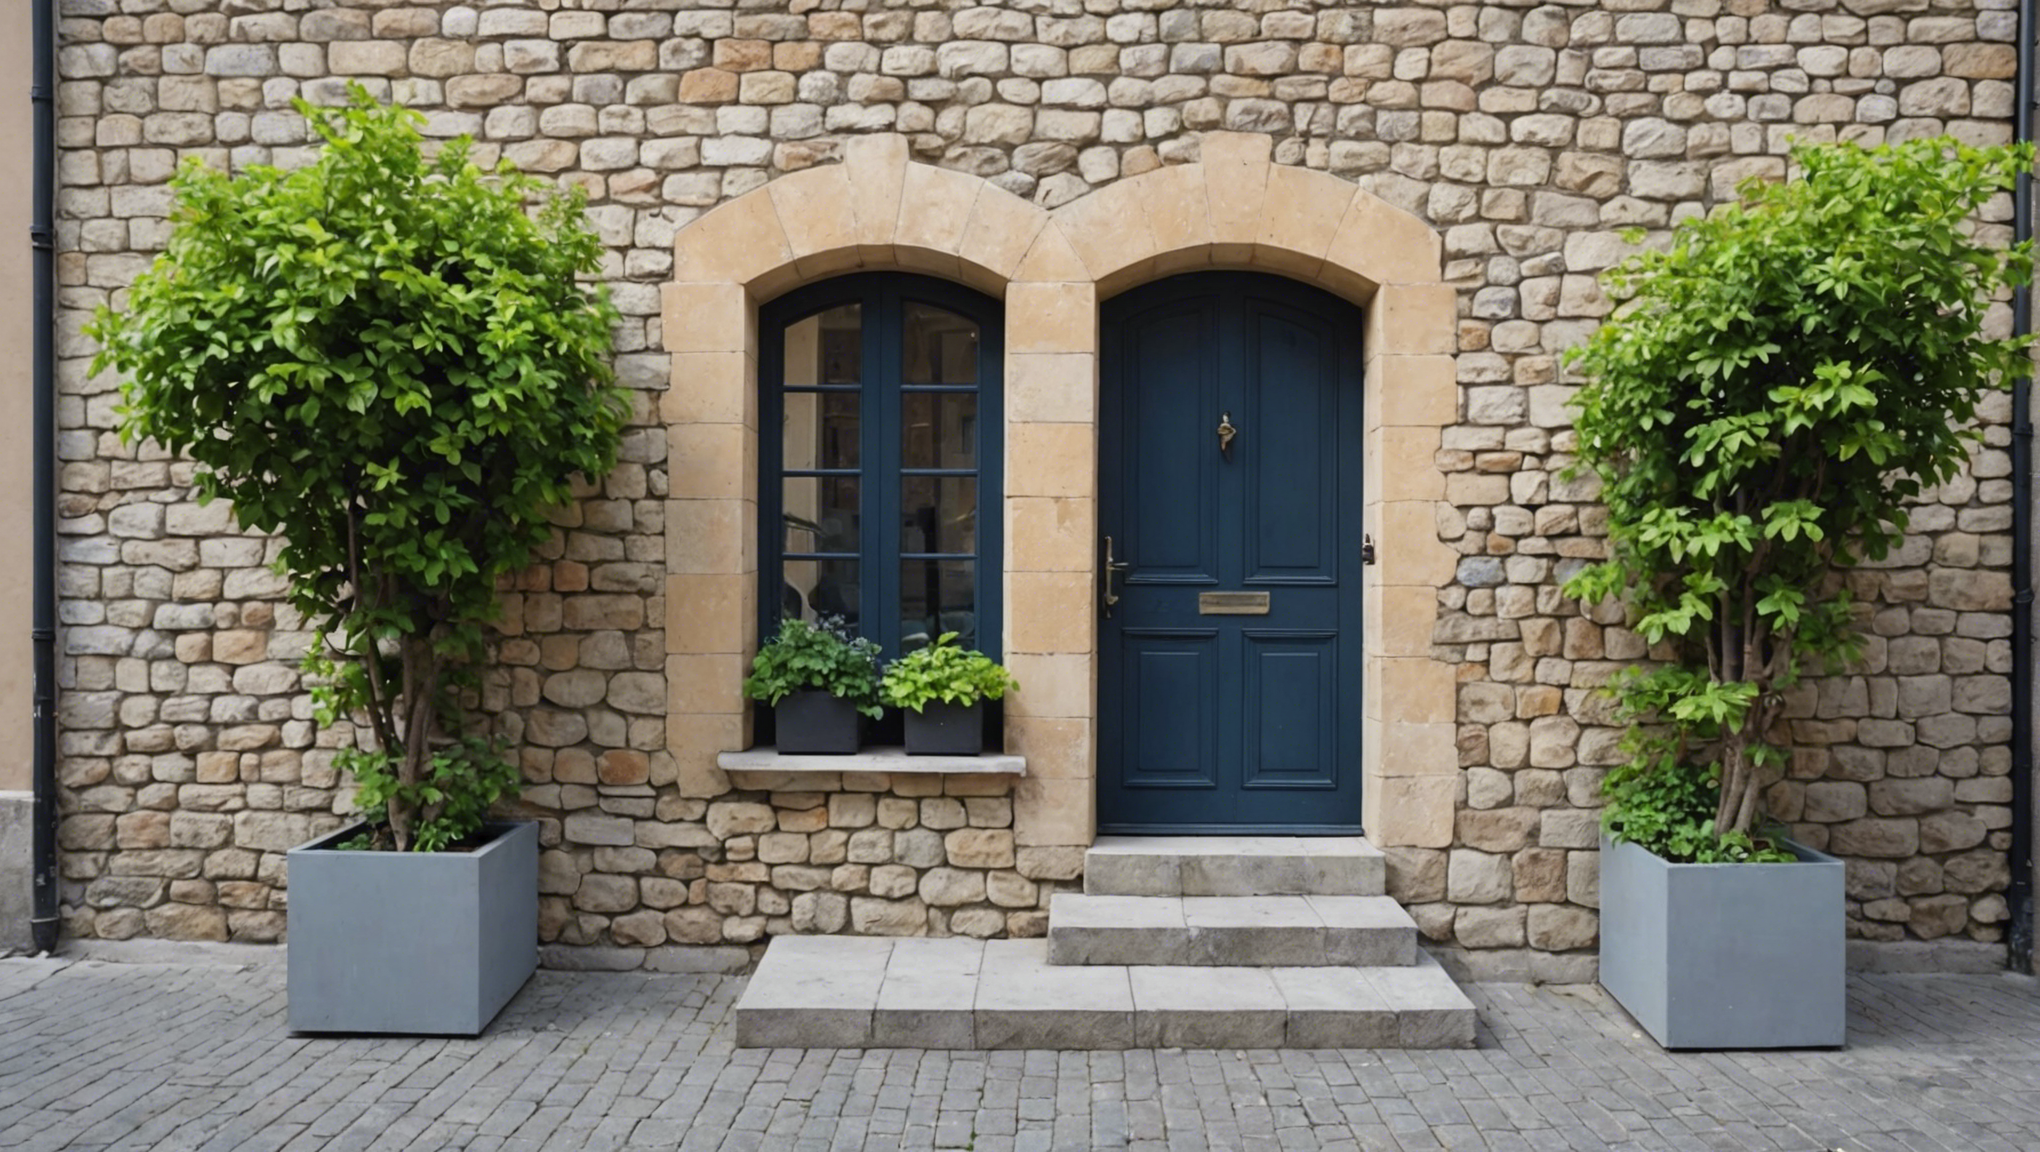 découvrez des conseils pratiques pour choisir la clôture idéale pour votre mur extérieur de maison et améliorer l'esthétique de votre propriété.